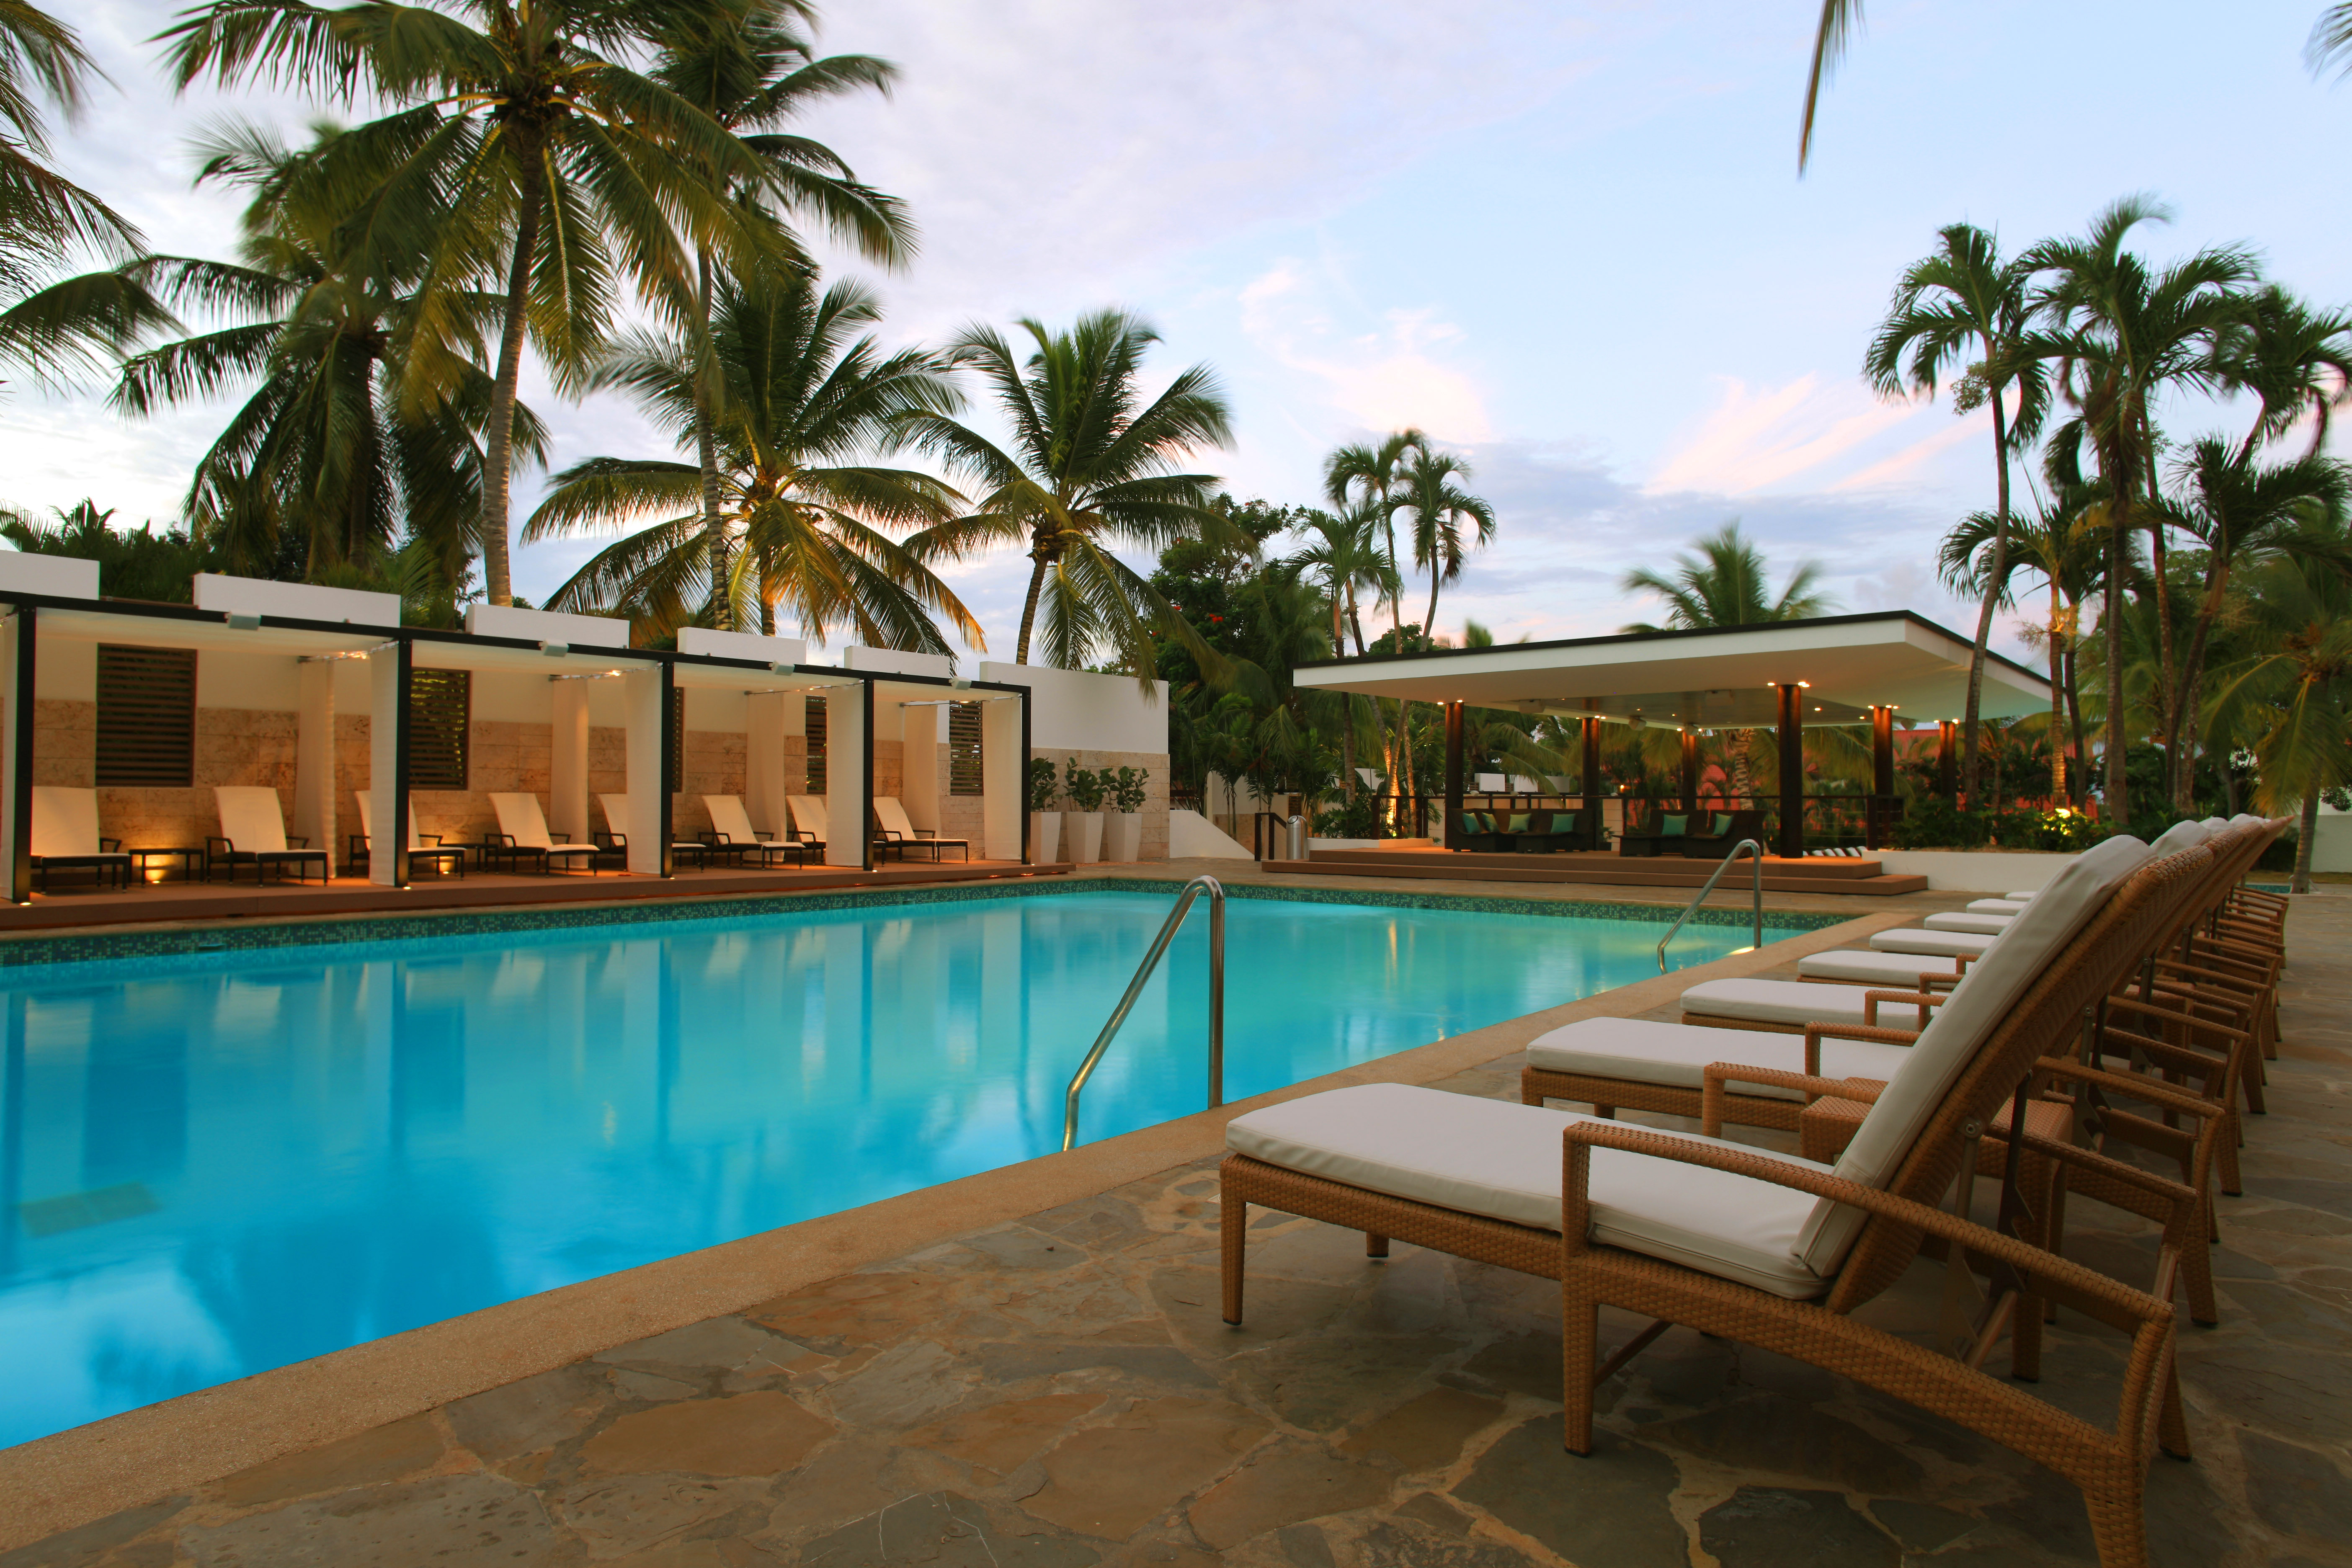 Casa de Campo Luxury Resort | All Inclusive Dominican Republic | Celebrity Kardashian Vacation | Pool